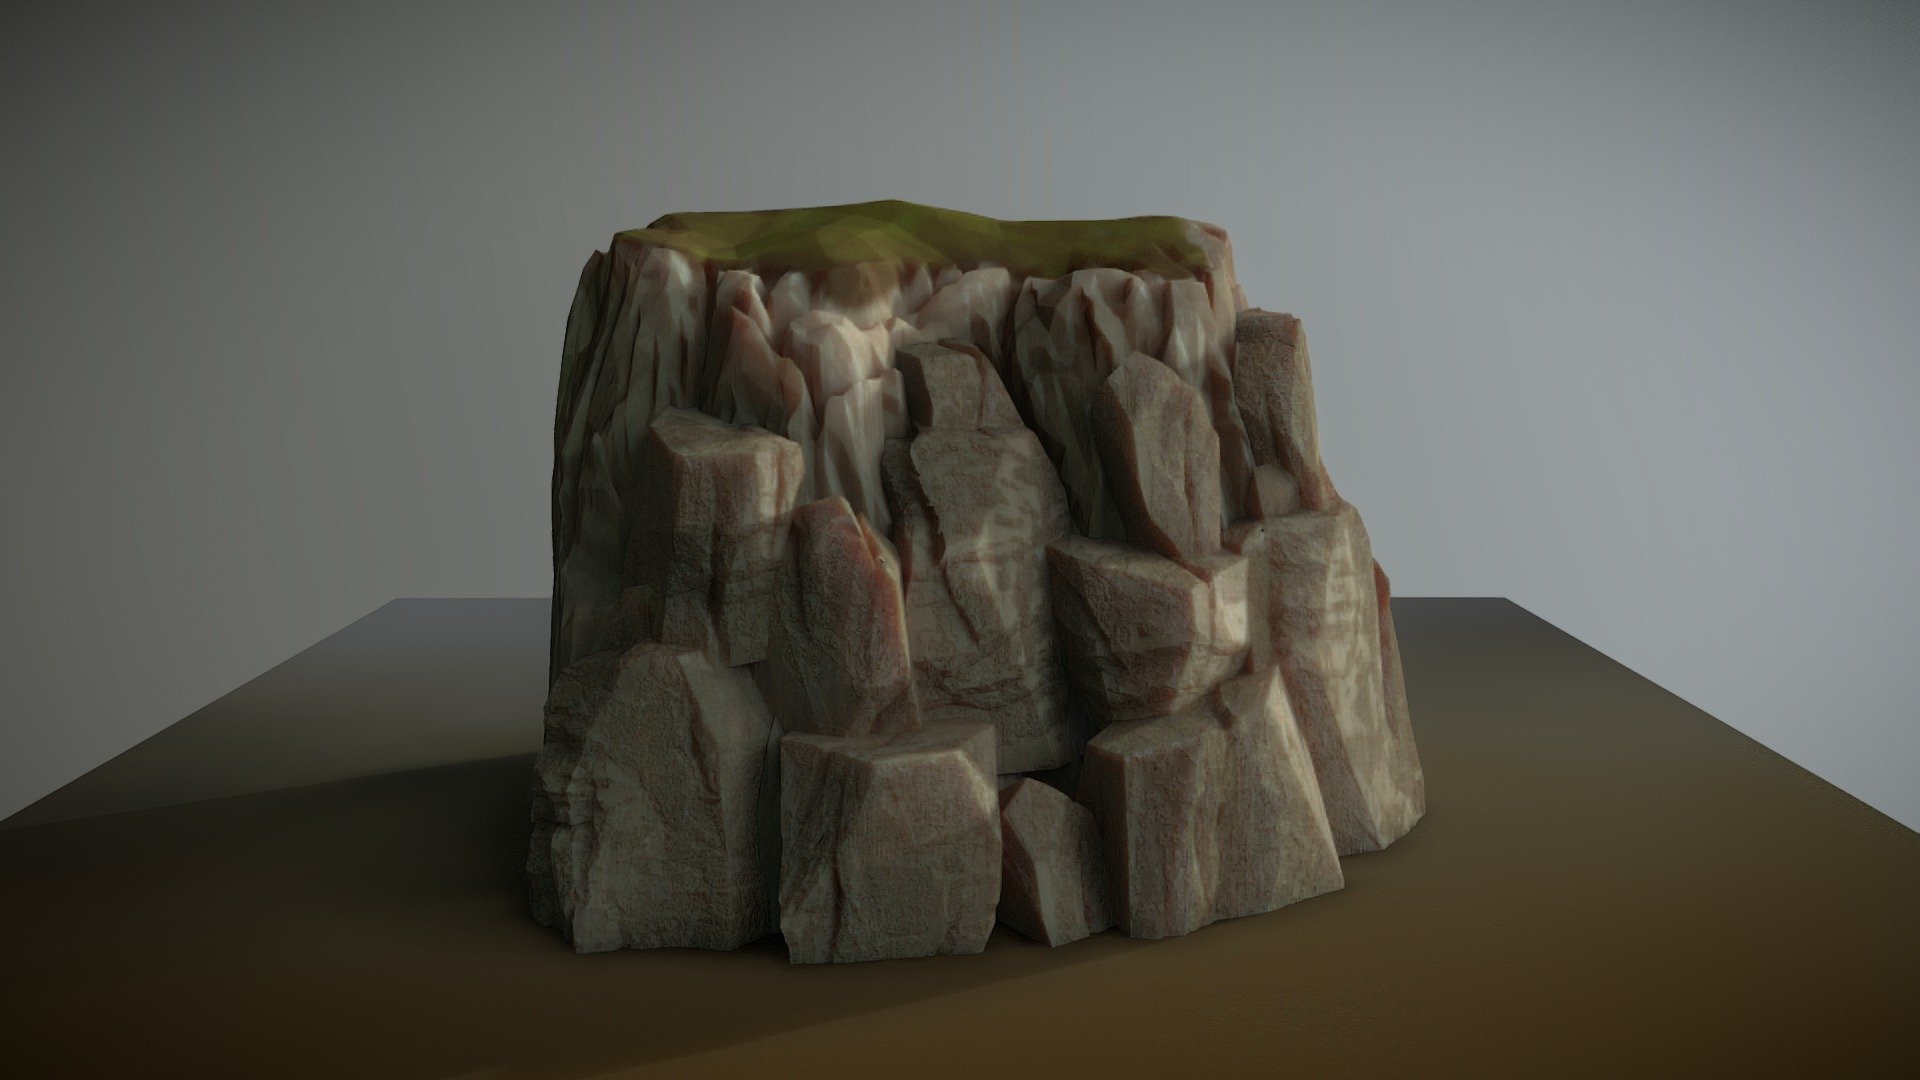 Renaissance Cliff 2 - 3D model by sligocreatures 3d model